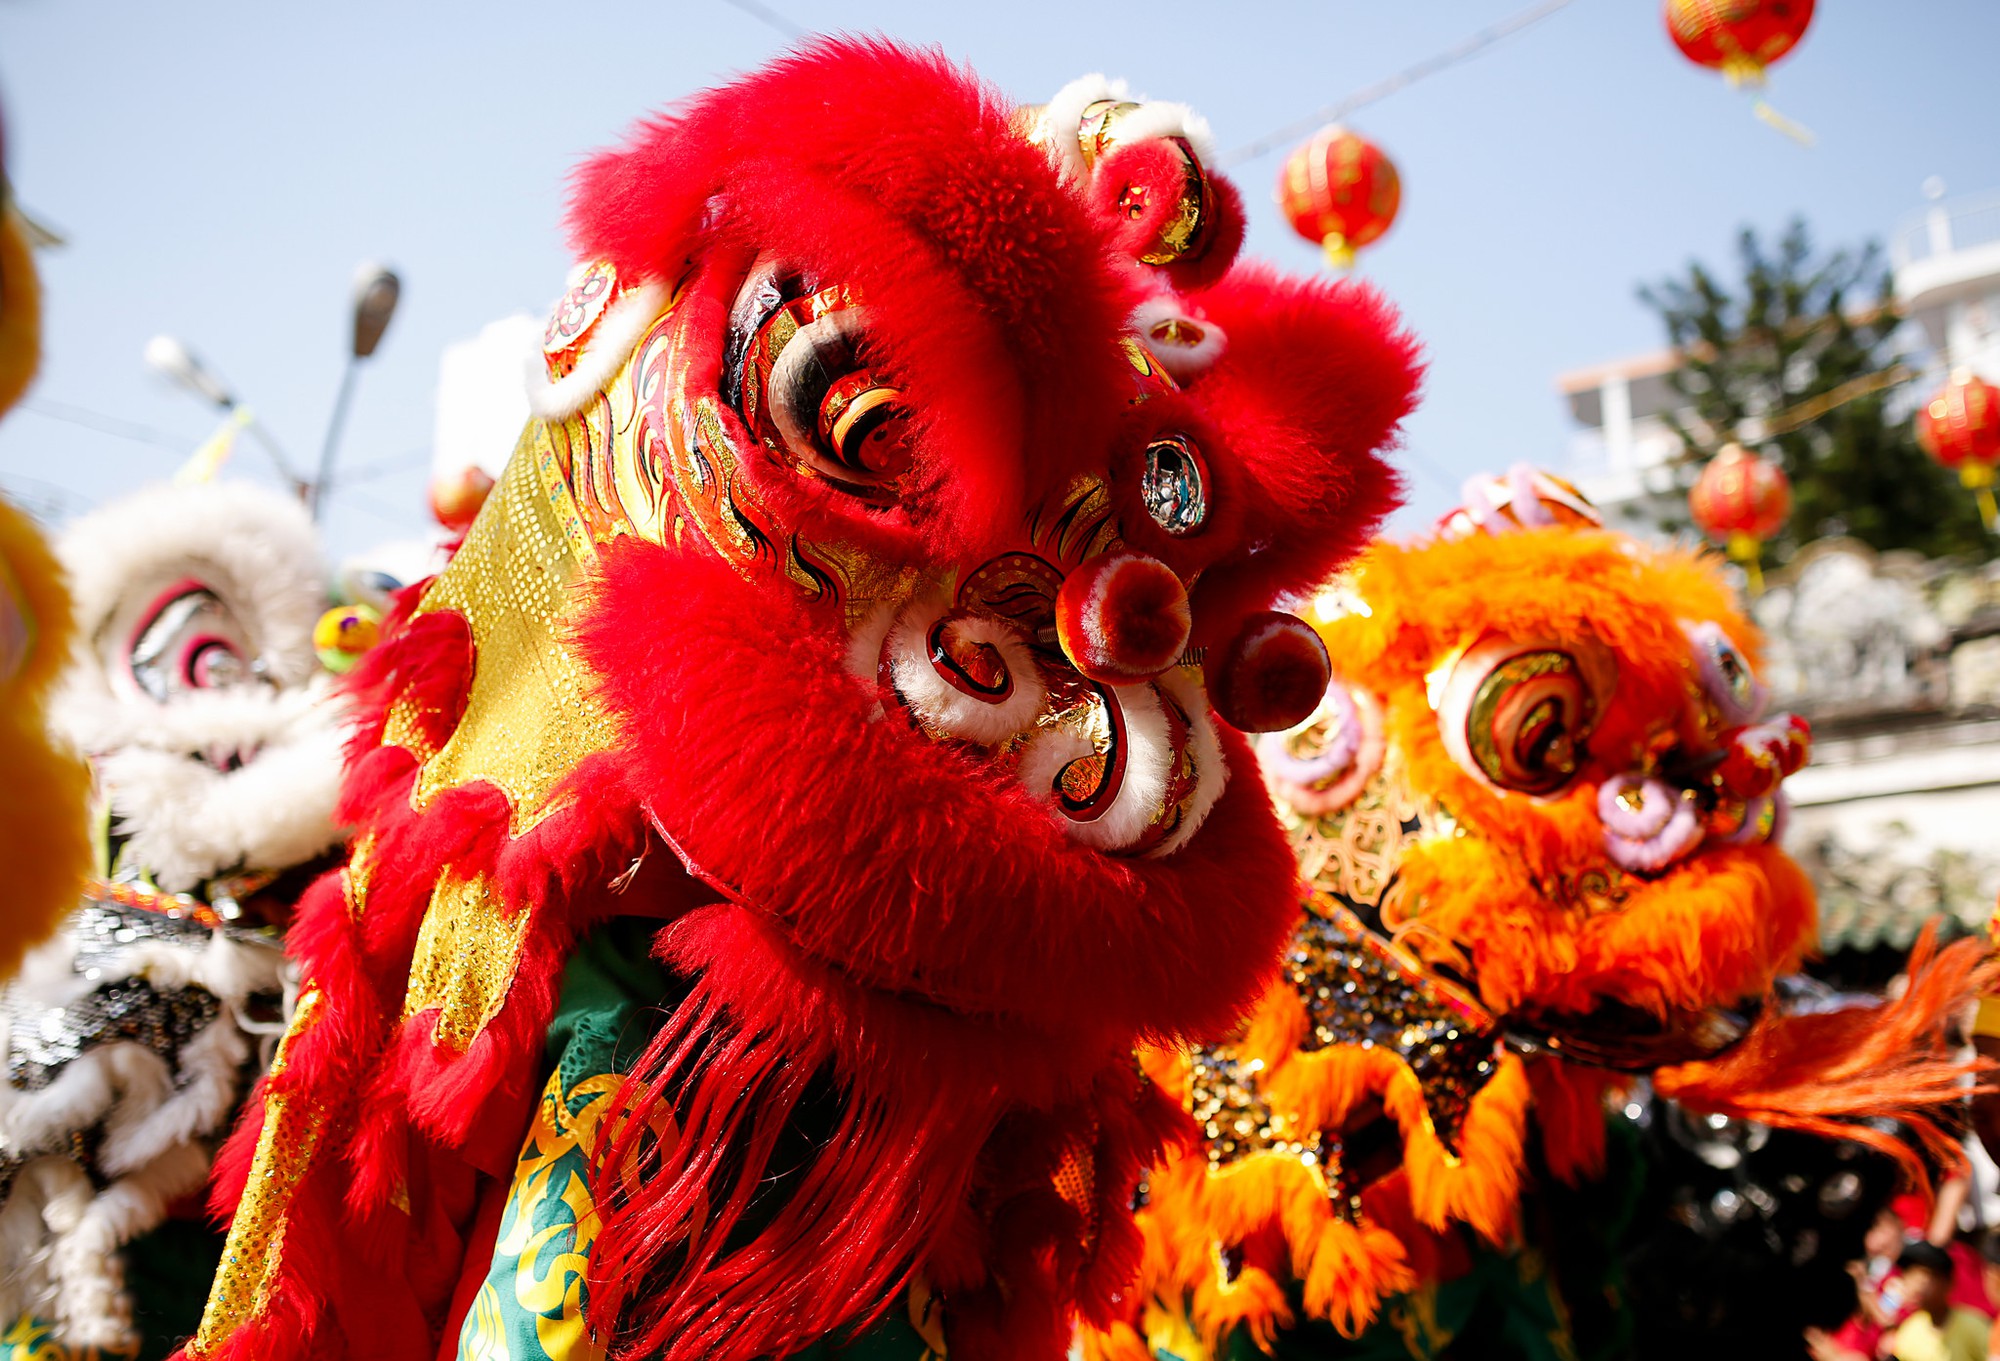 Lân - Sư - Rồng xuống phố là sự kiện thường niên được mong đợi nhất trong năm. Với những màn diễu hành vô cùng hoành tráng và phong cách trình diễn đặc biệt, Lân sư rồng đã trở thành một biểu tượng văn hóa Việt Nam đầy màu sắc. Hãy đến và tham gia vào không khí lễ hội đầy sôi động này!